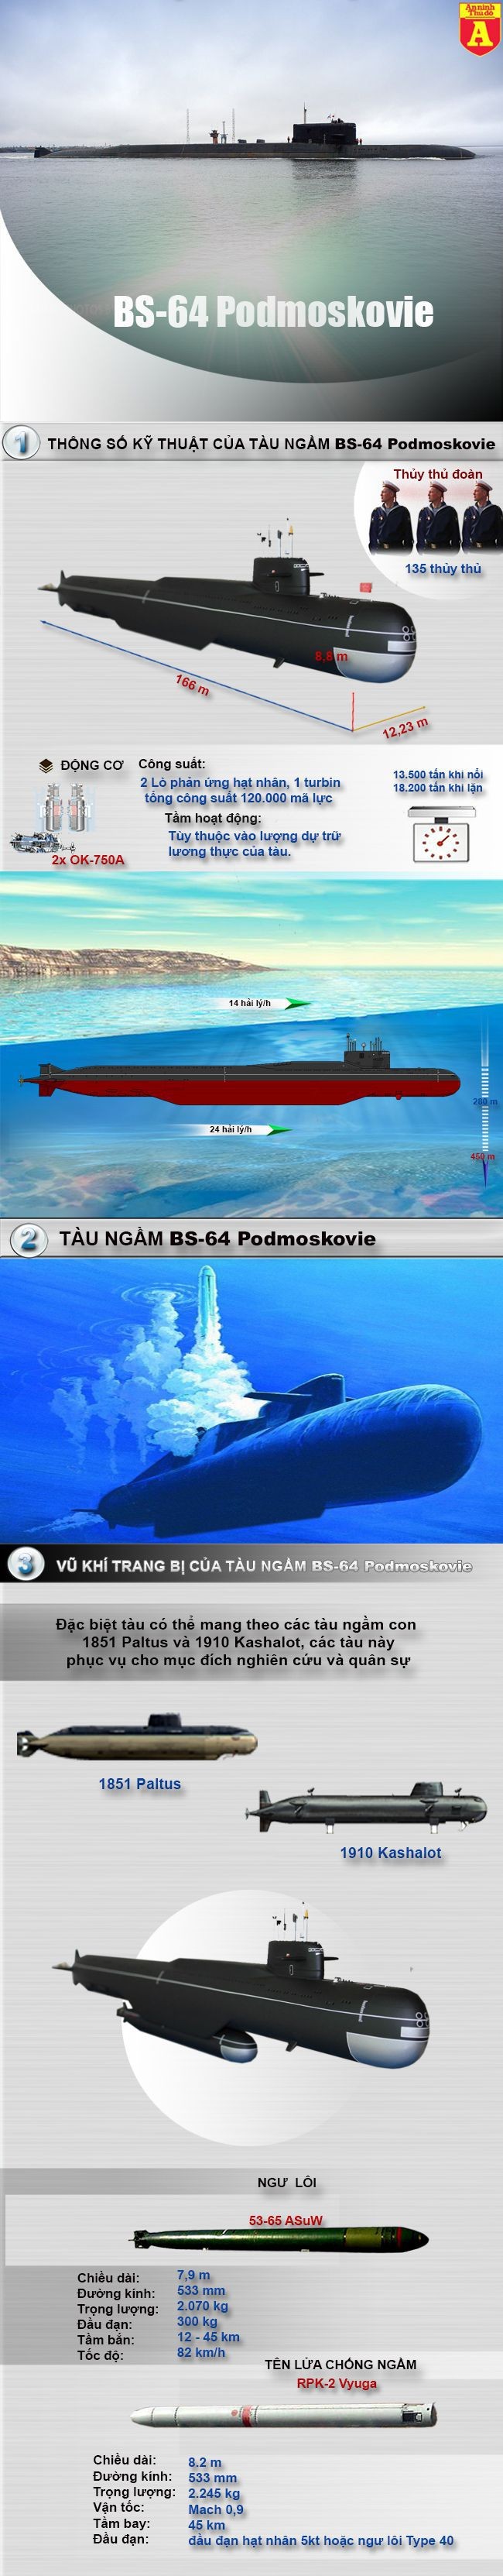 [Infographic] Siêu tàu ngầm do thám của Nga khiến Mỹ "ớn lạnh" ảnh 2